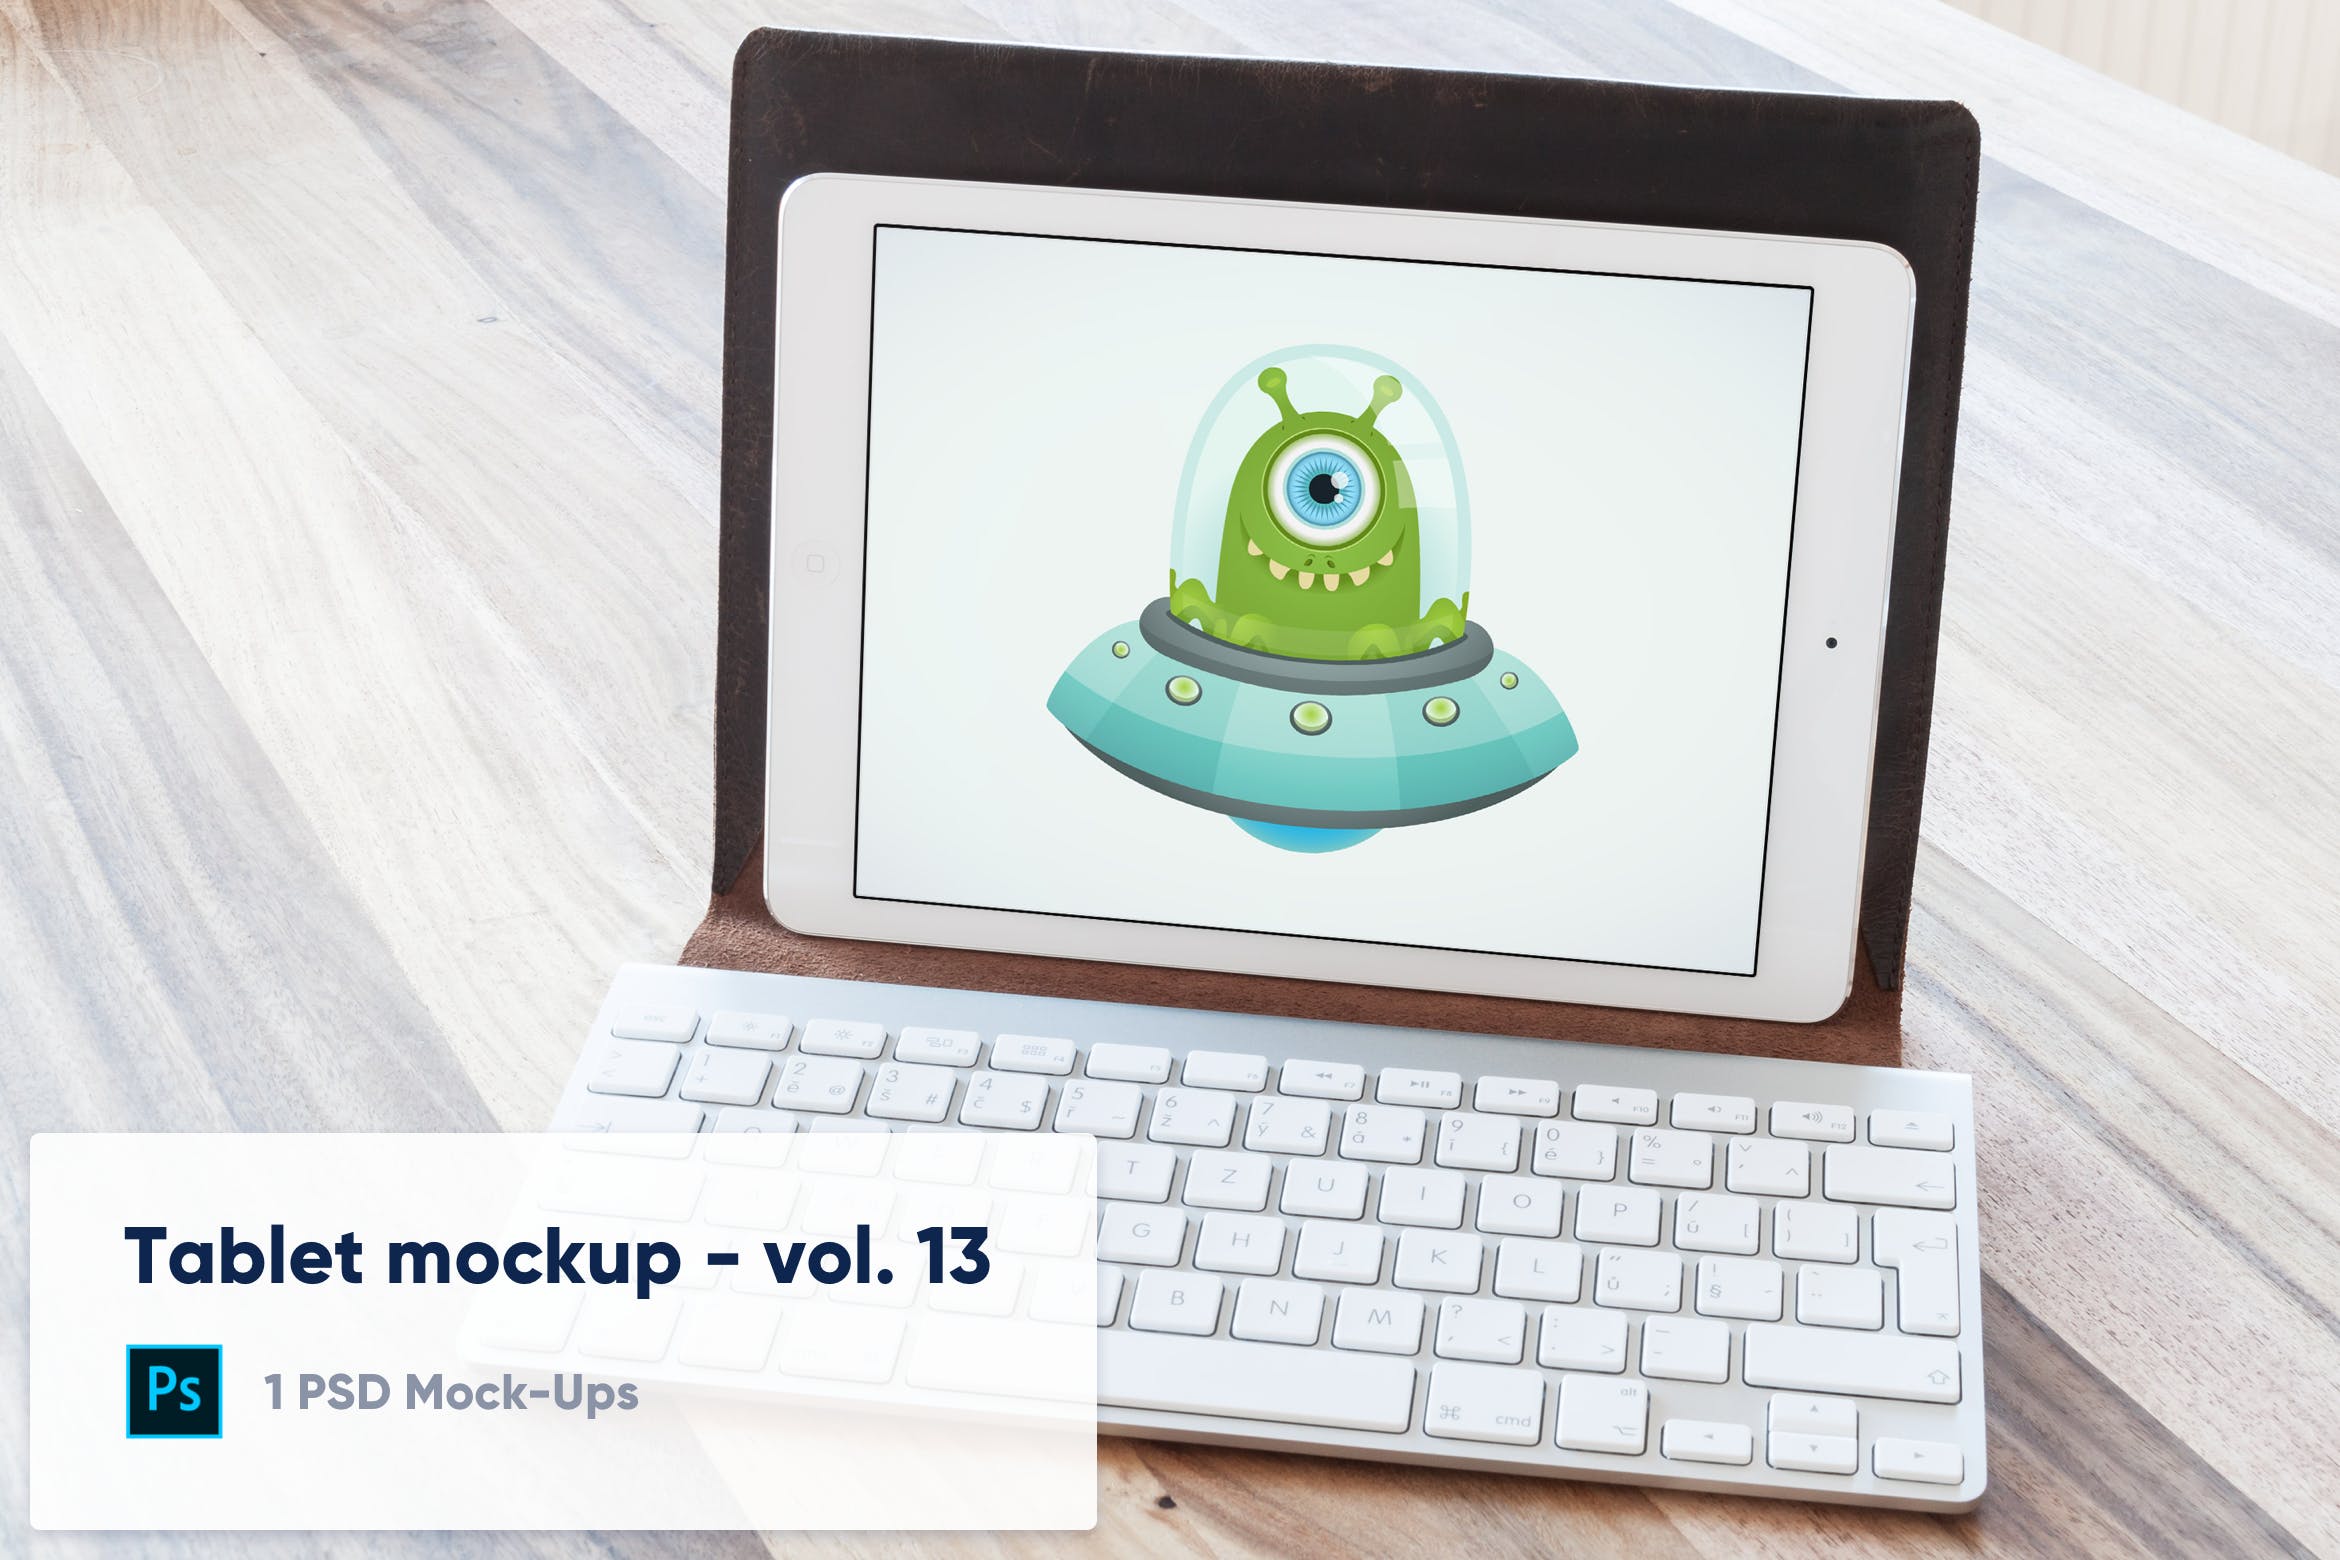 附带键盘套的iPad平板电脑屏幕预览蚂蚁素材精选样机模板v13 Tablet in Keyboard Case Desk Mockup – Vol. 13插图